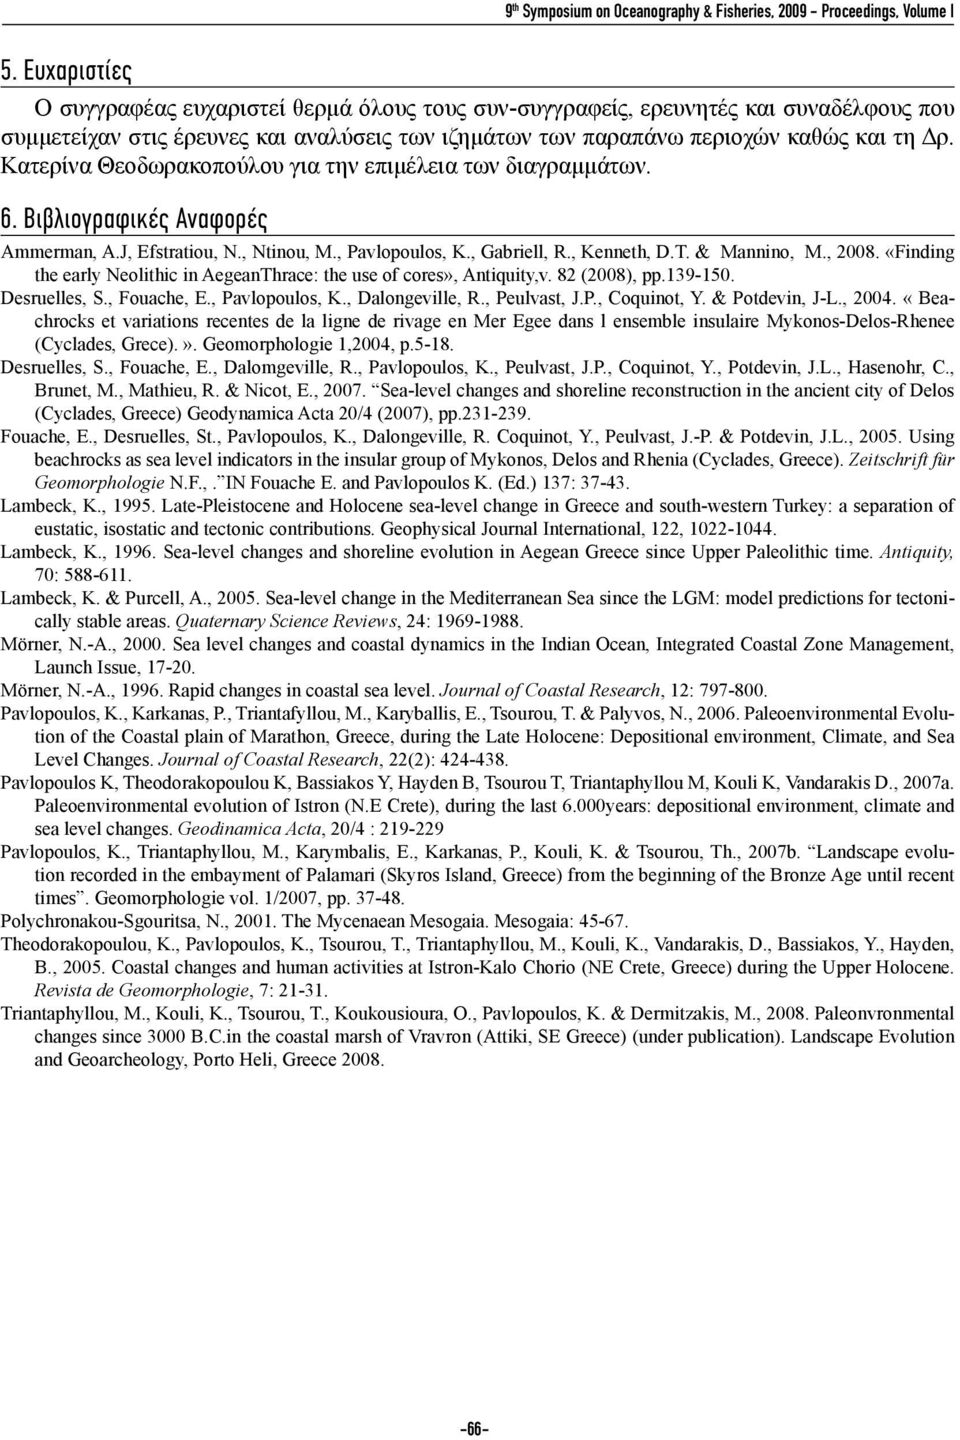 Κατερίνα Θεοδωρακοπούλου για την επιμέλεια των διαγραμμάτων. 6. Βιβλιογραφικές Αναφορές Ammerman, A.J, Efstratiou, N., Ntinou, M., Pavlopoulos, K., Gabriell, R., Kenneth, D.T. & Mannino, M., 2008.